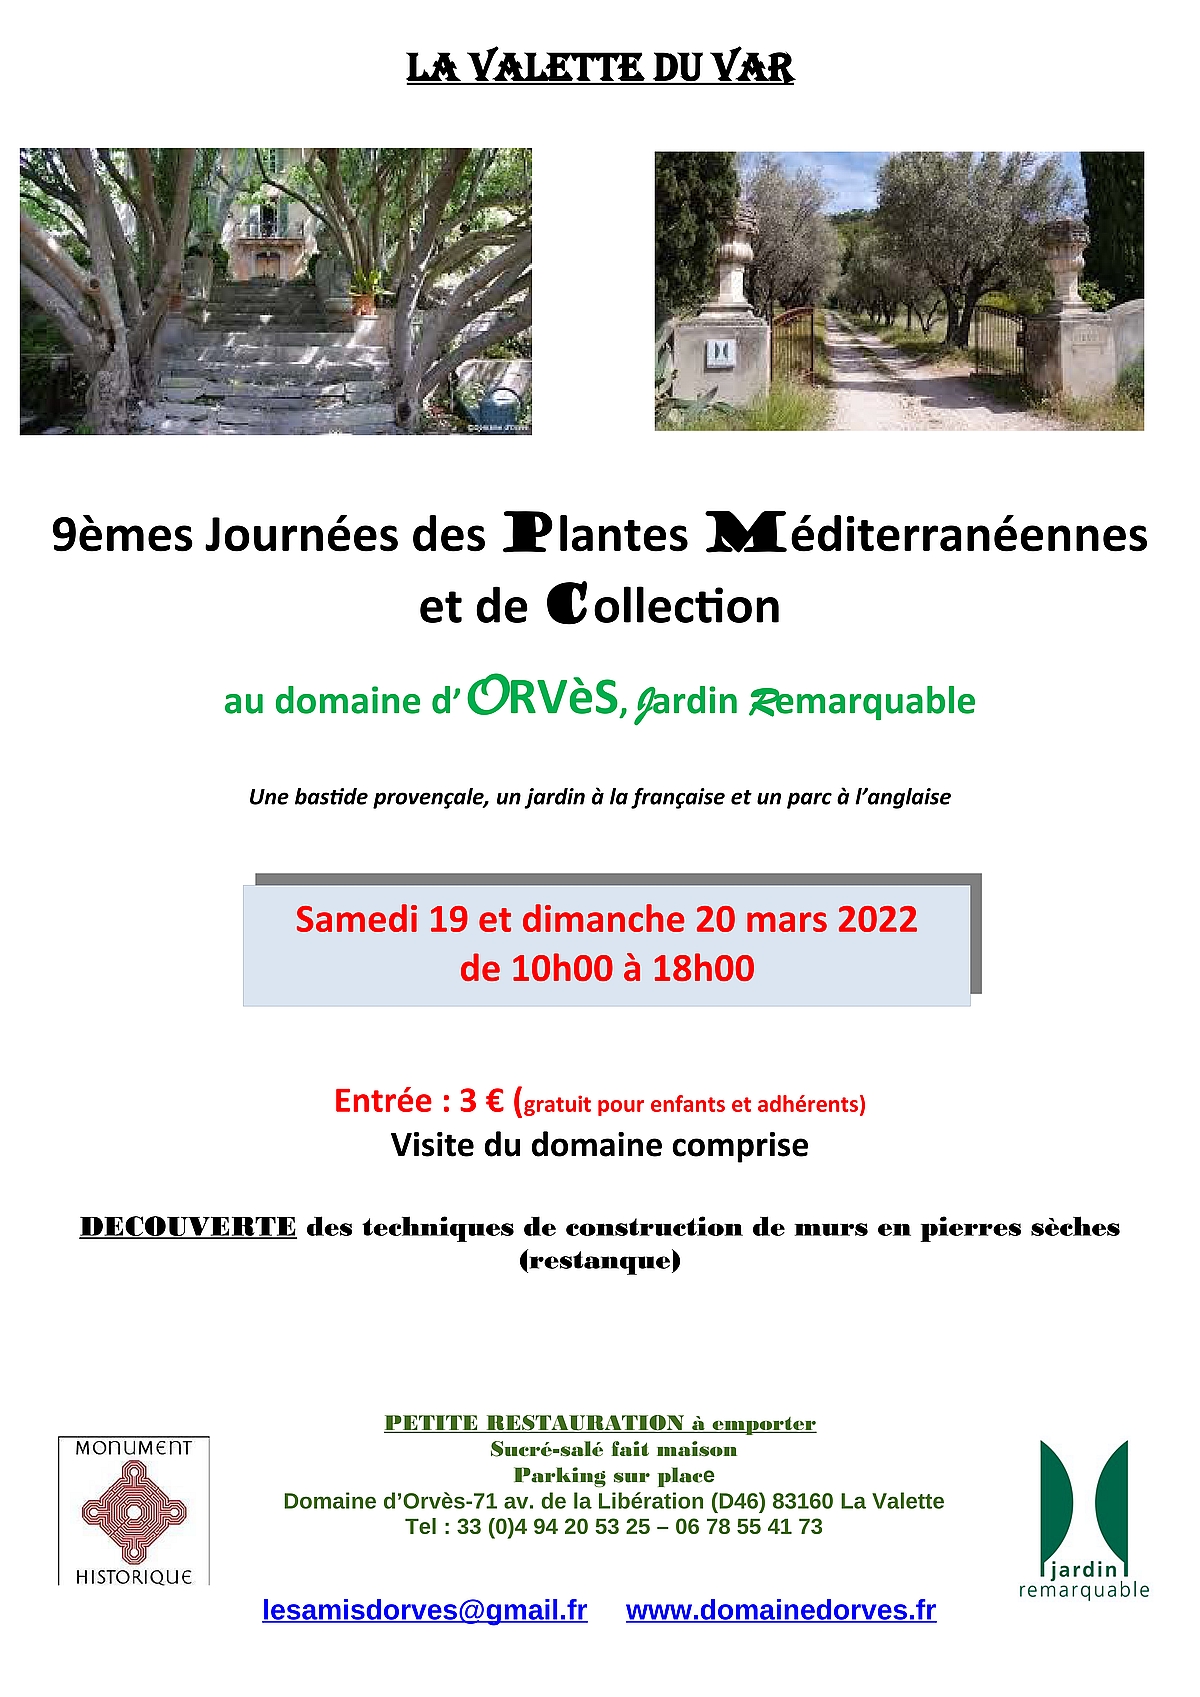 Journée des plantes Méditerranéennes et de Collection - Domaine d'Orvès - 19 et 20 mars 2022